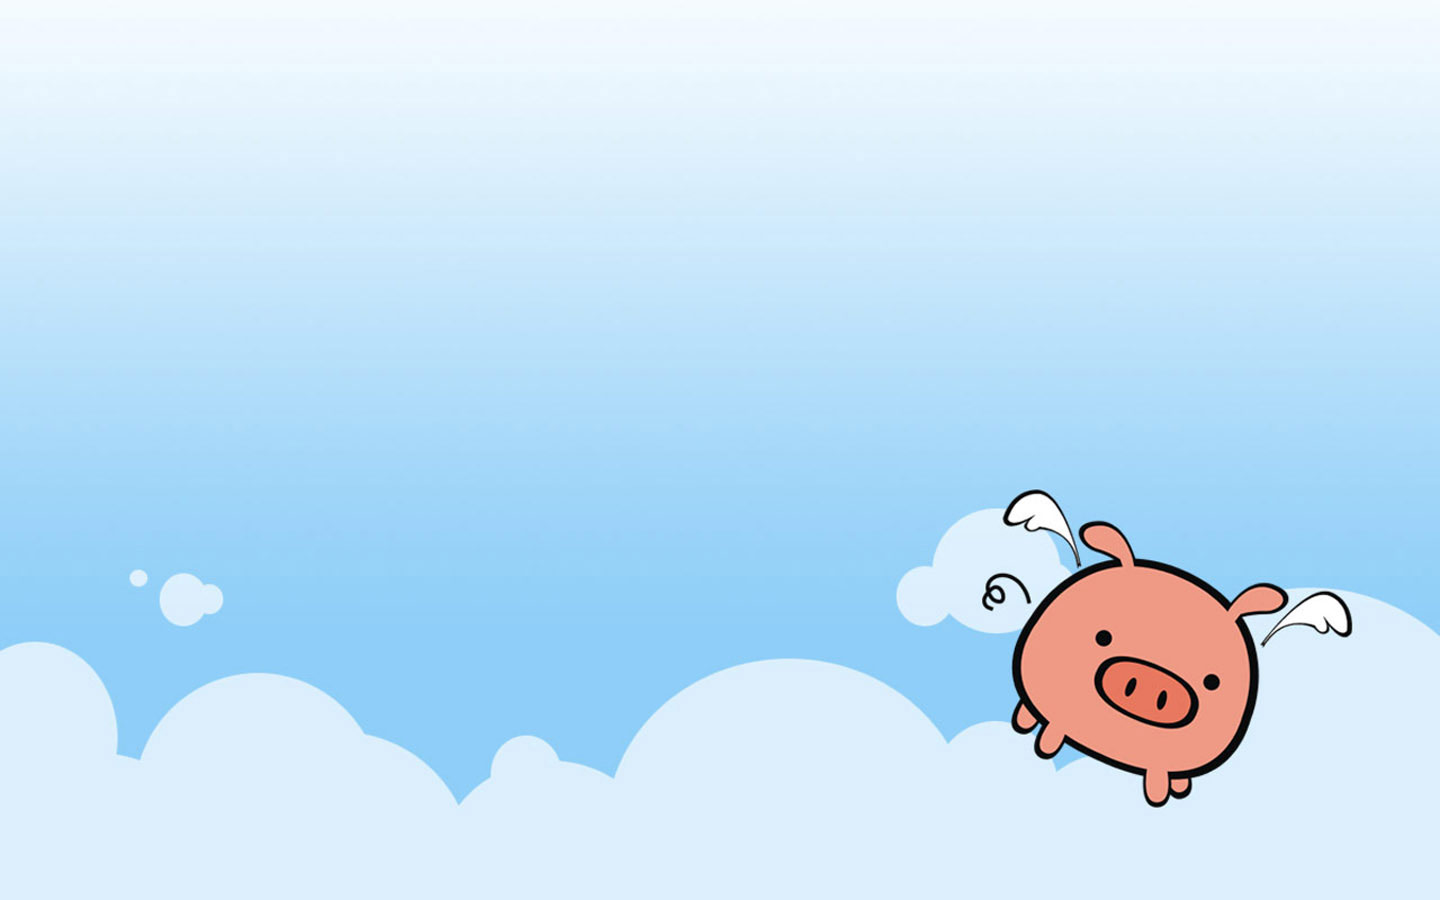 The Cute Pig Illustrator Wallpaper Comics Desktop 1440x900